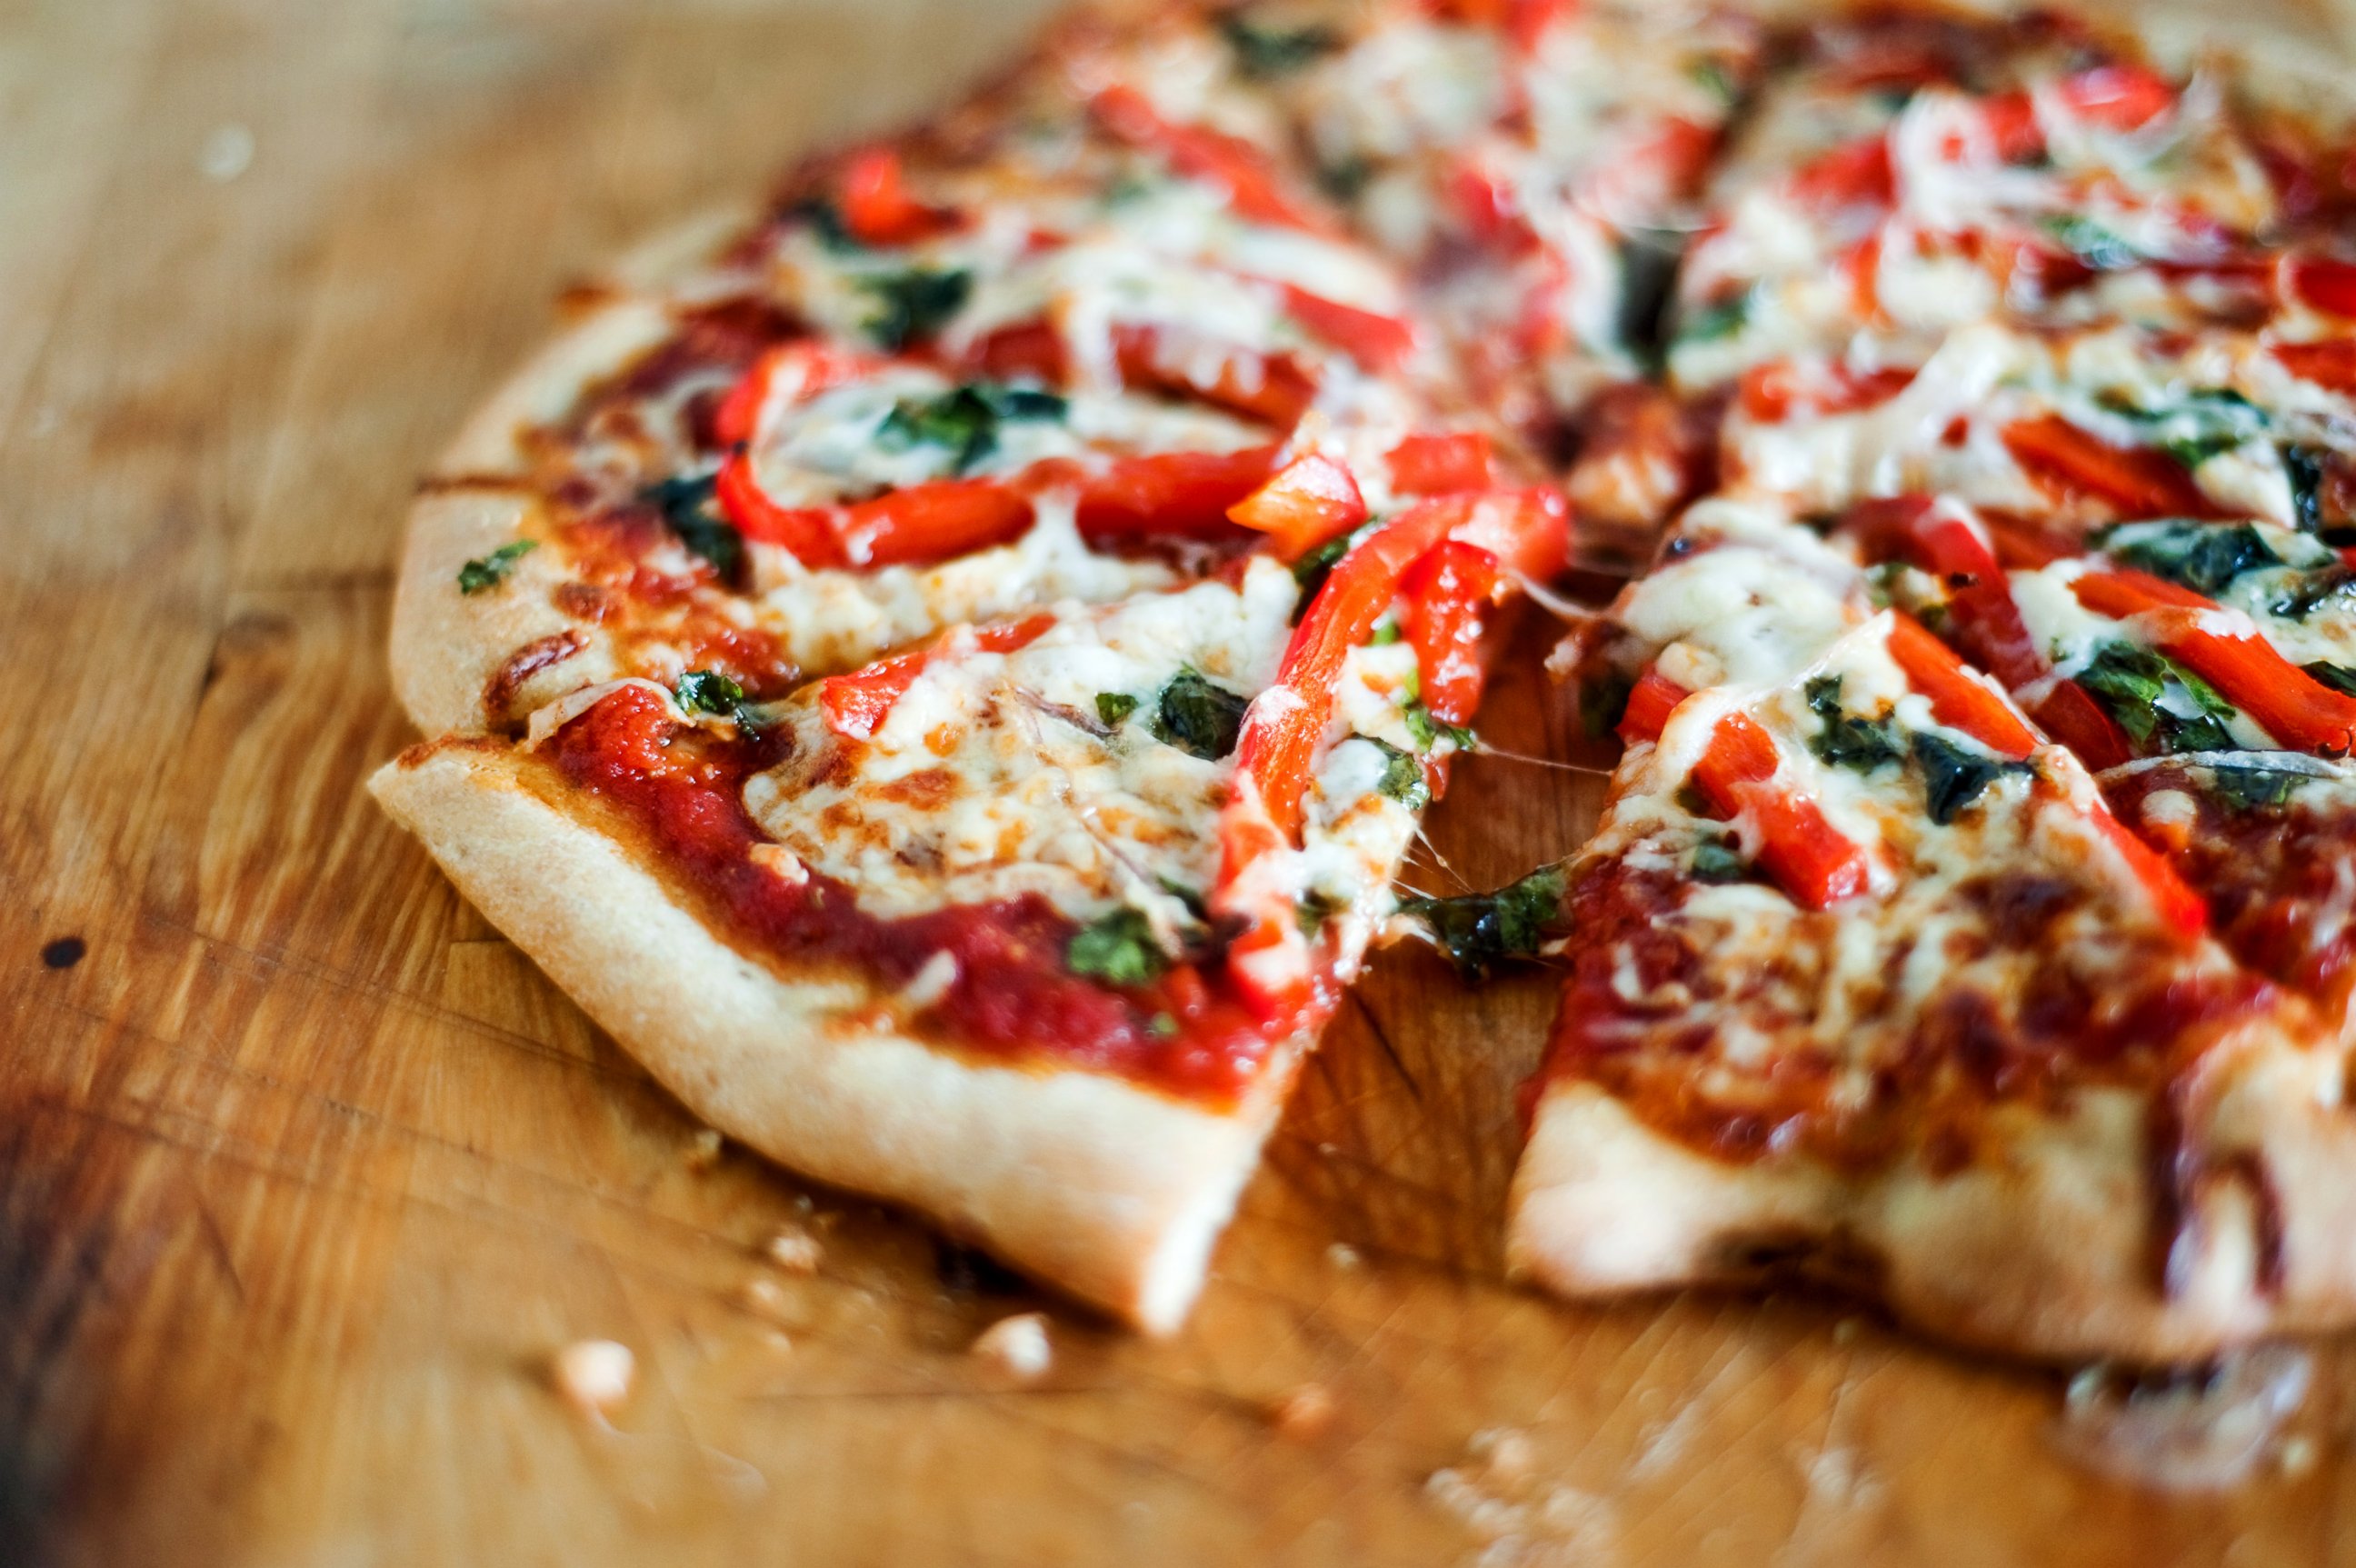 PHOTO: Vegetable pizza